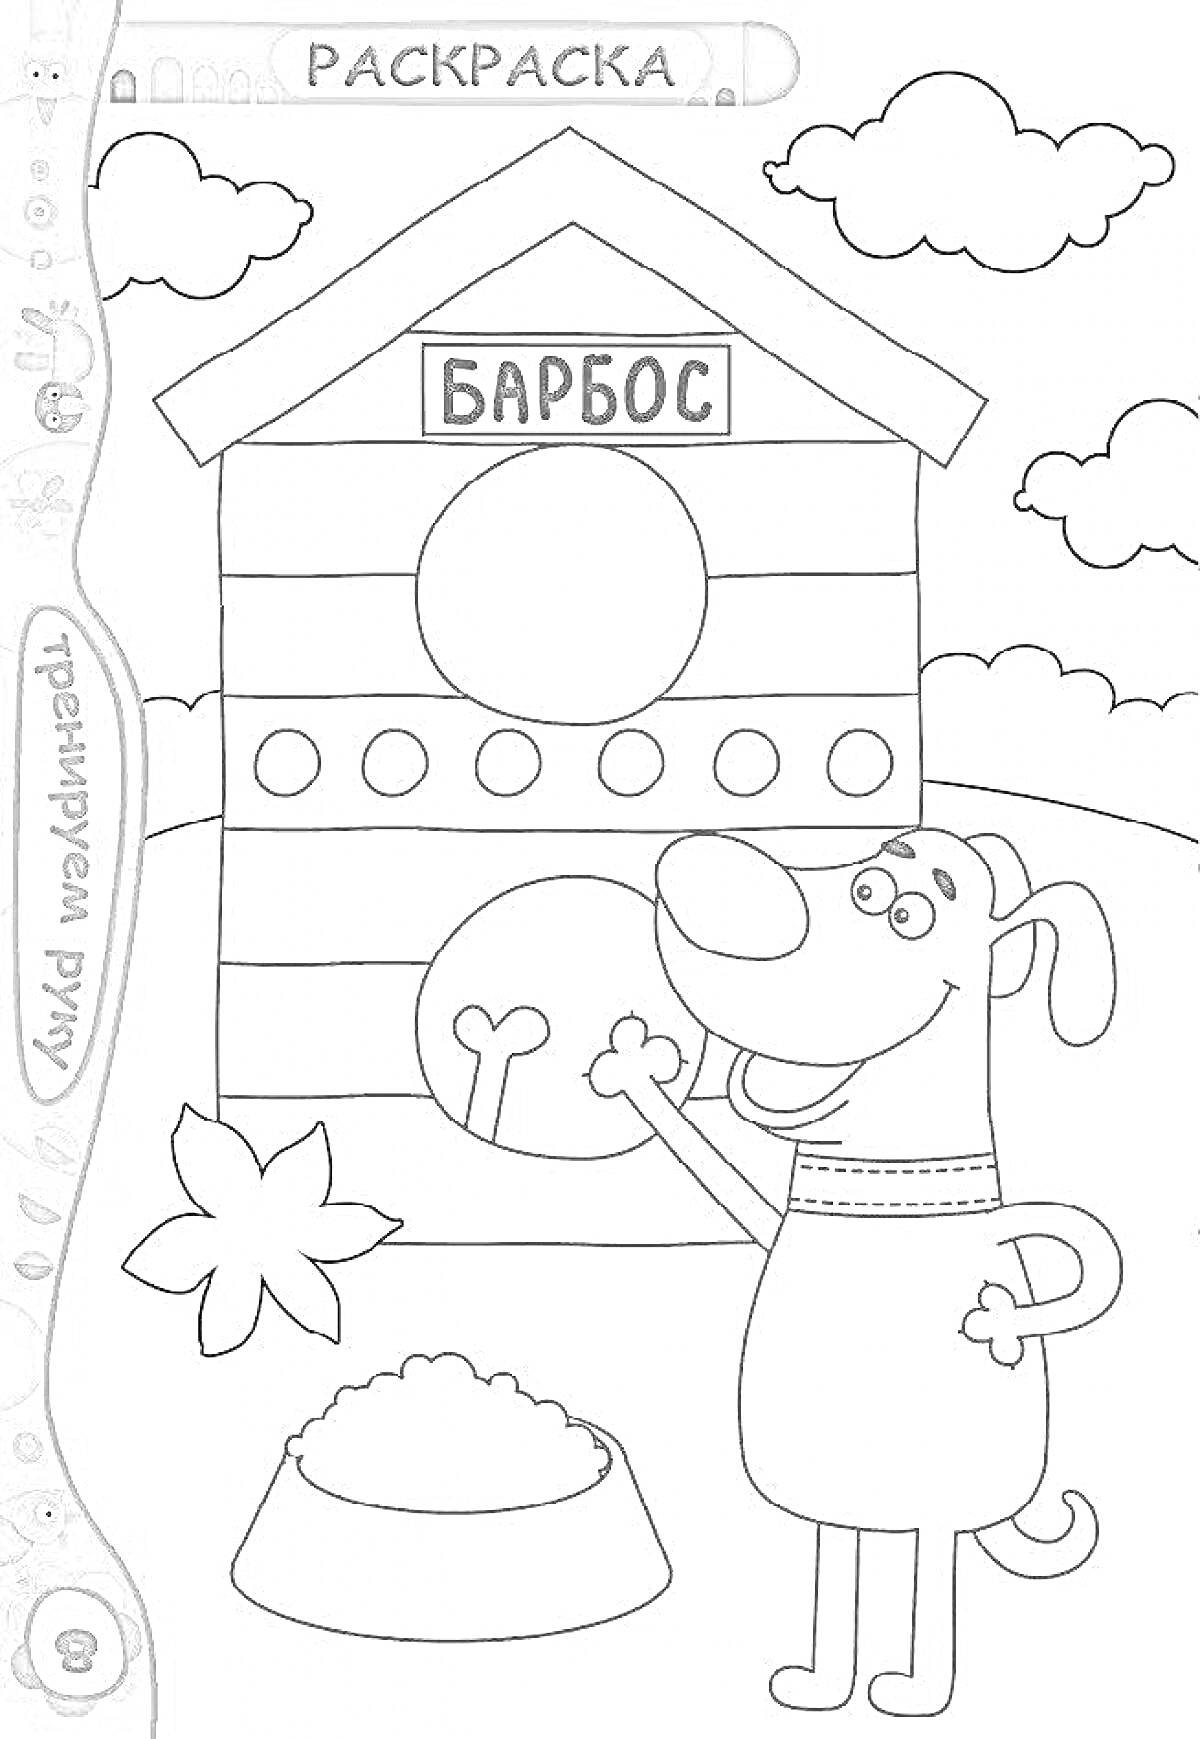 Раскраска Собачья будка под именем Барбос, миска, собака, листок, облака